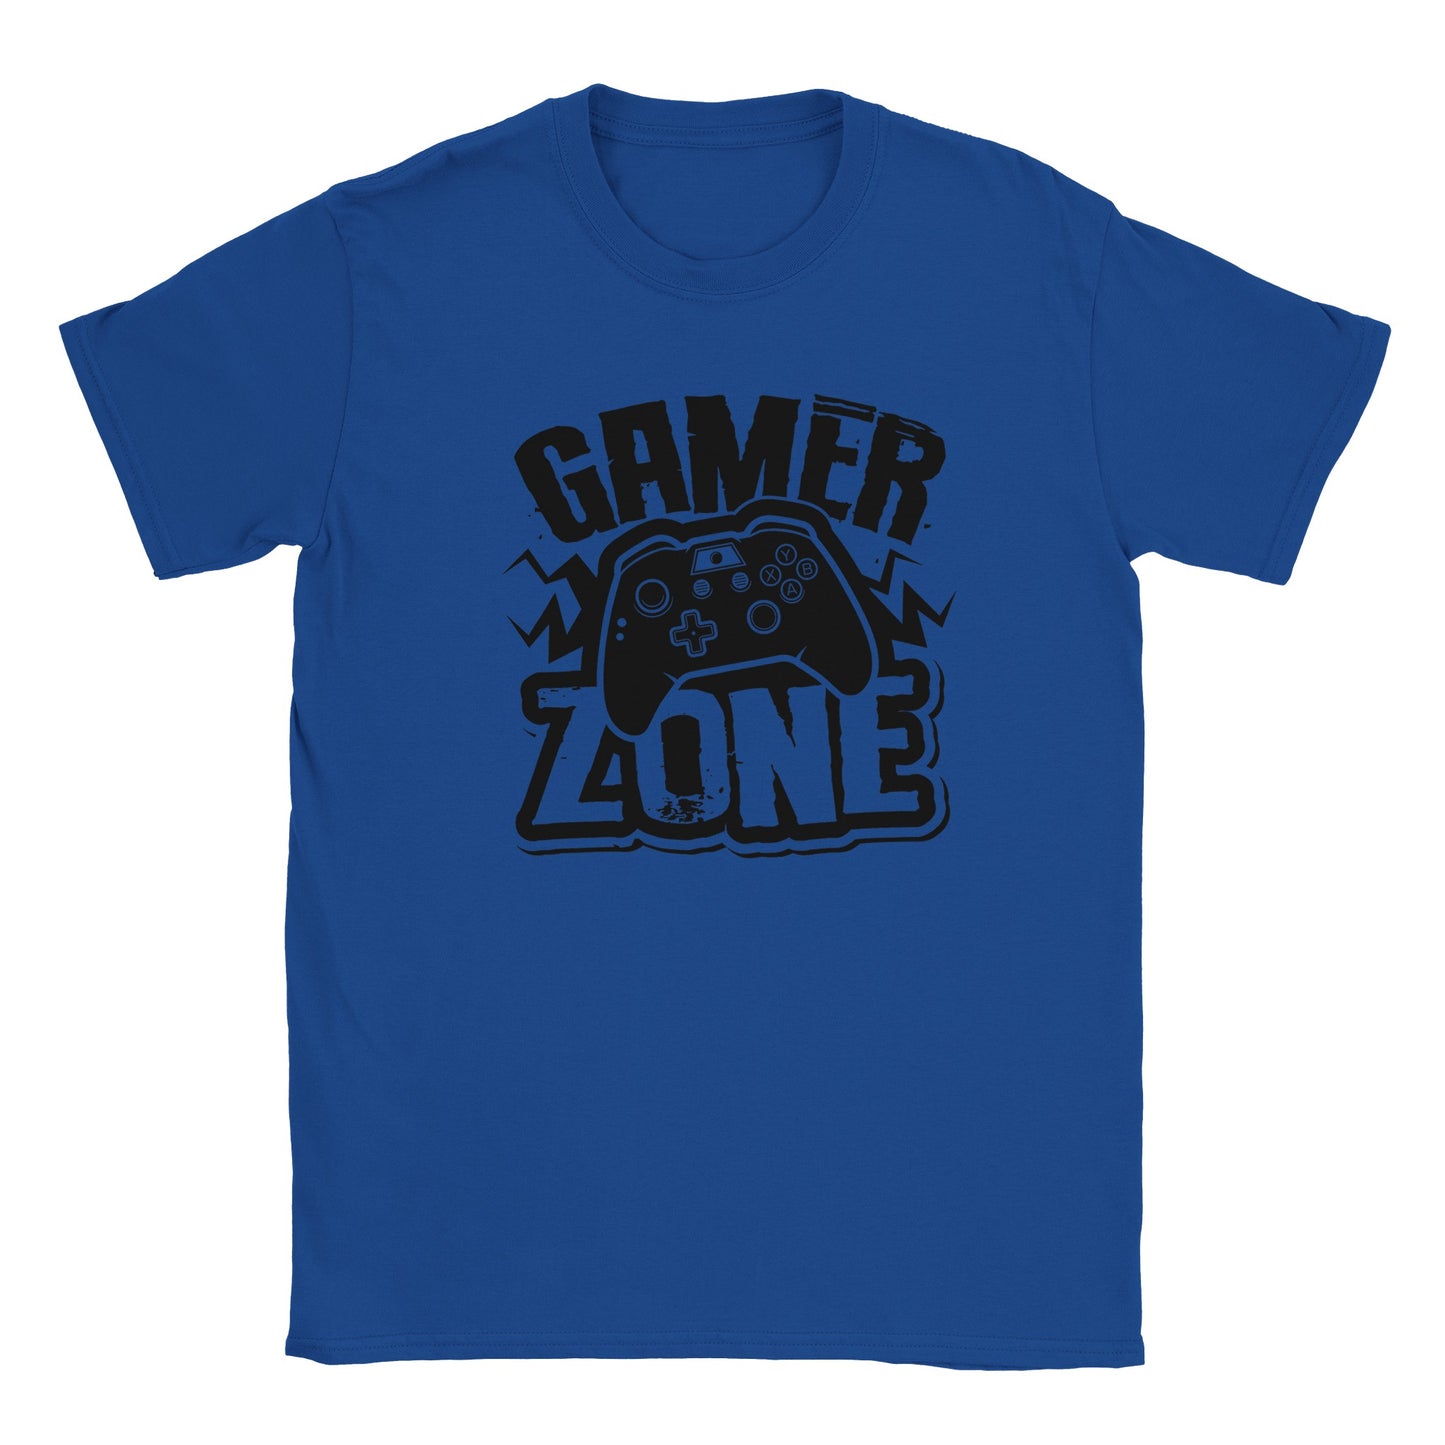 Gamer Zone T-shirt - Mister Snarky's